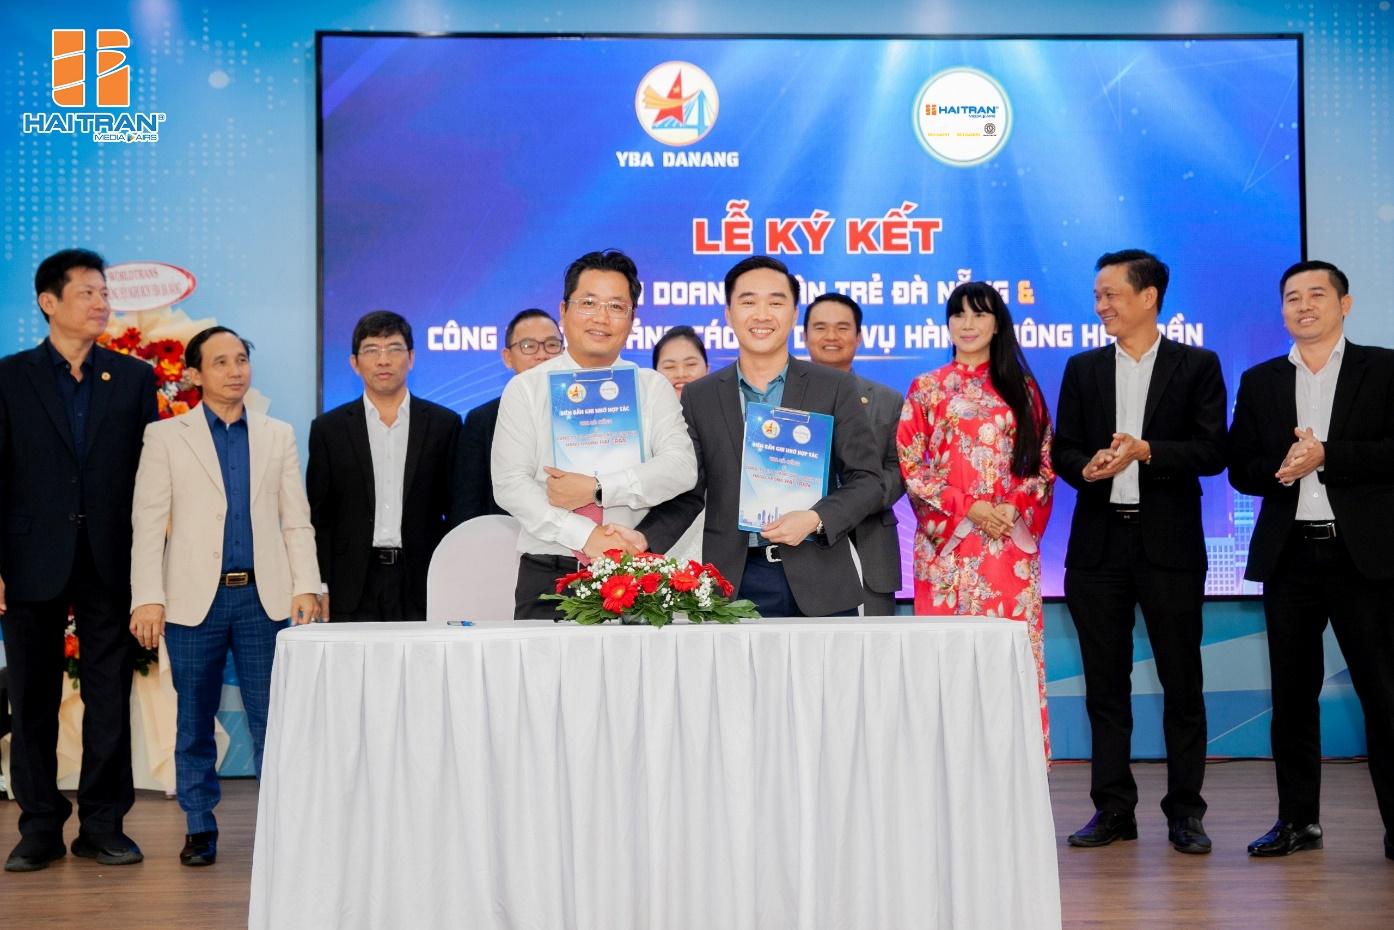 Hai Tran Media & Airs ký kết hợp tác với Hội Doanh nhân trẻ Đà Nẵng